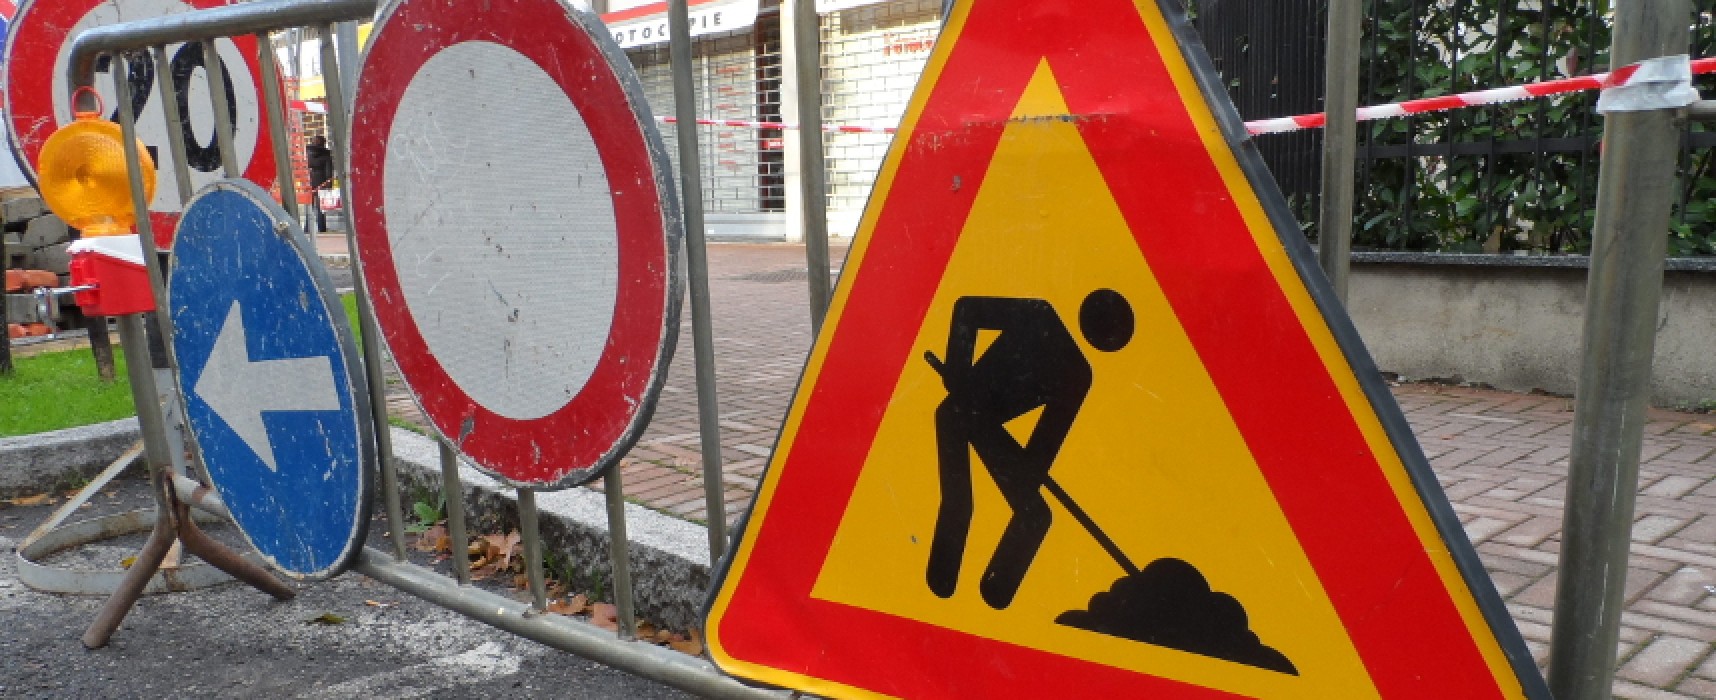 Spina: “Avviato il piano di manutenzione straordinaria delle strade, stanziati 700mila euro”